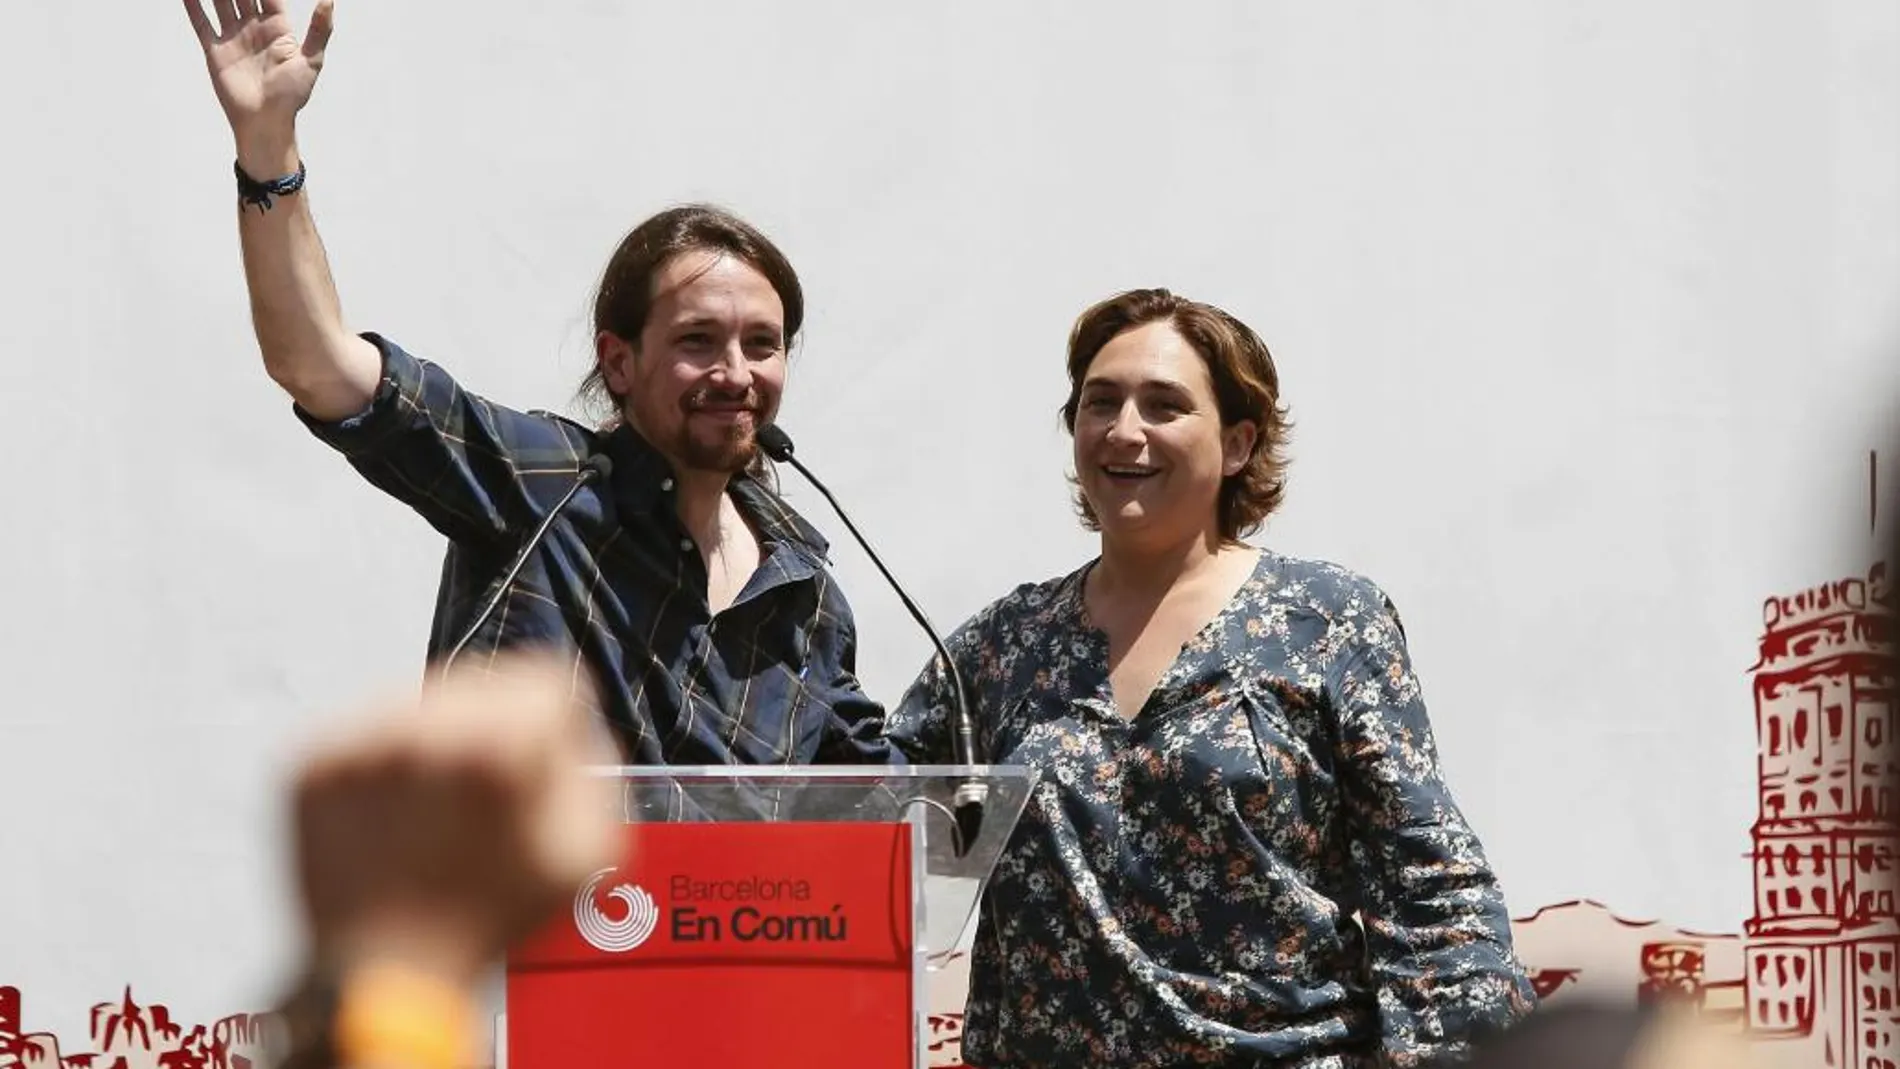 La candidata de Barcelona en Comú, Ada Colau, y el secretario general de Podemos, Pablo Iglesias, en Barcelona